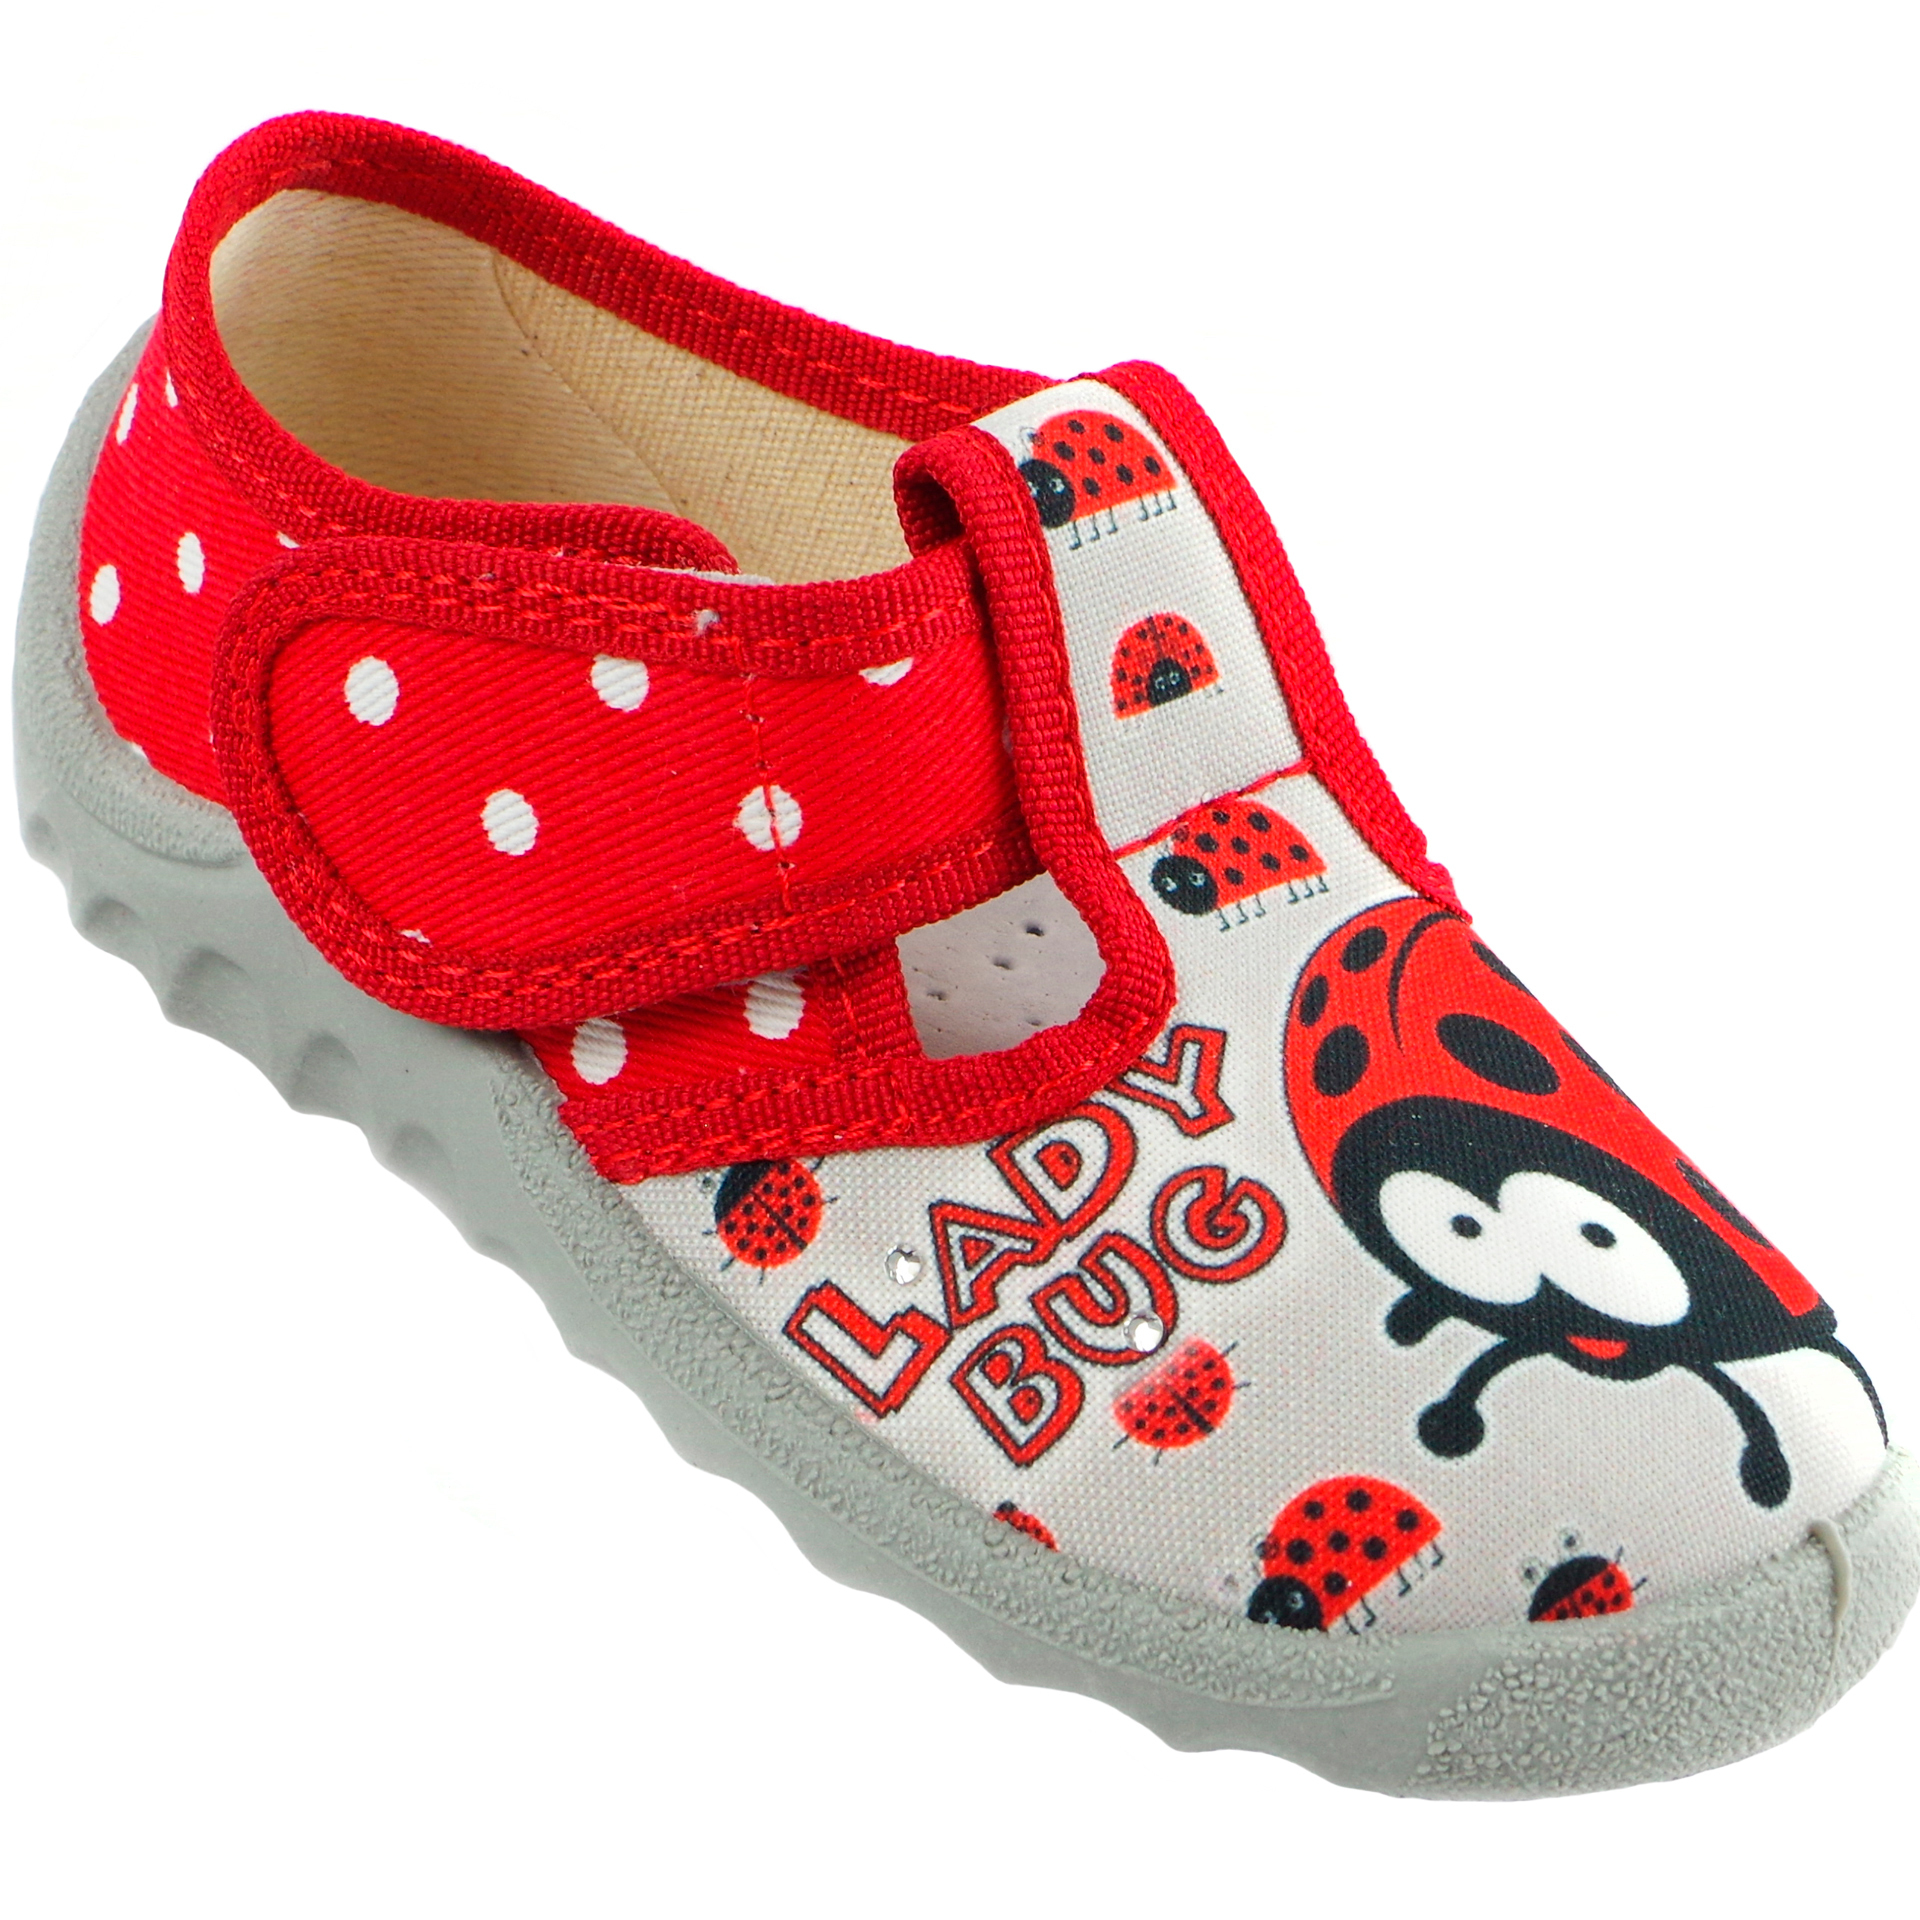 Текстильная обувь для девочек Тапочки Даша Lady Bug (1914) цвет Красный 21-27 размеры – Sole Kids